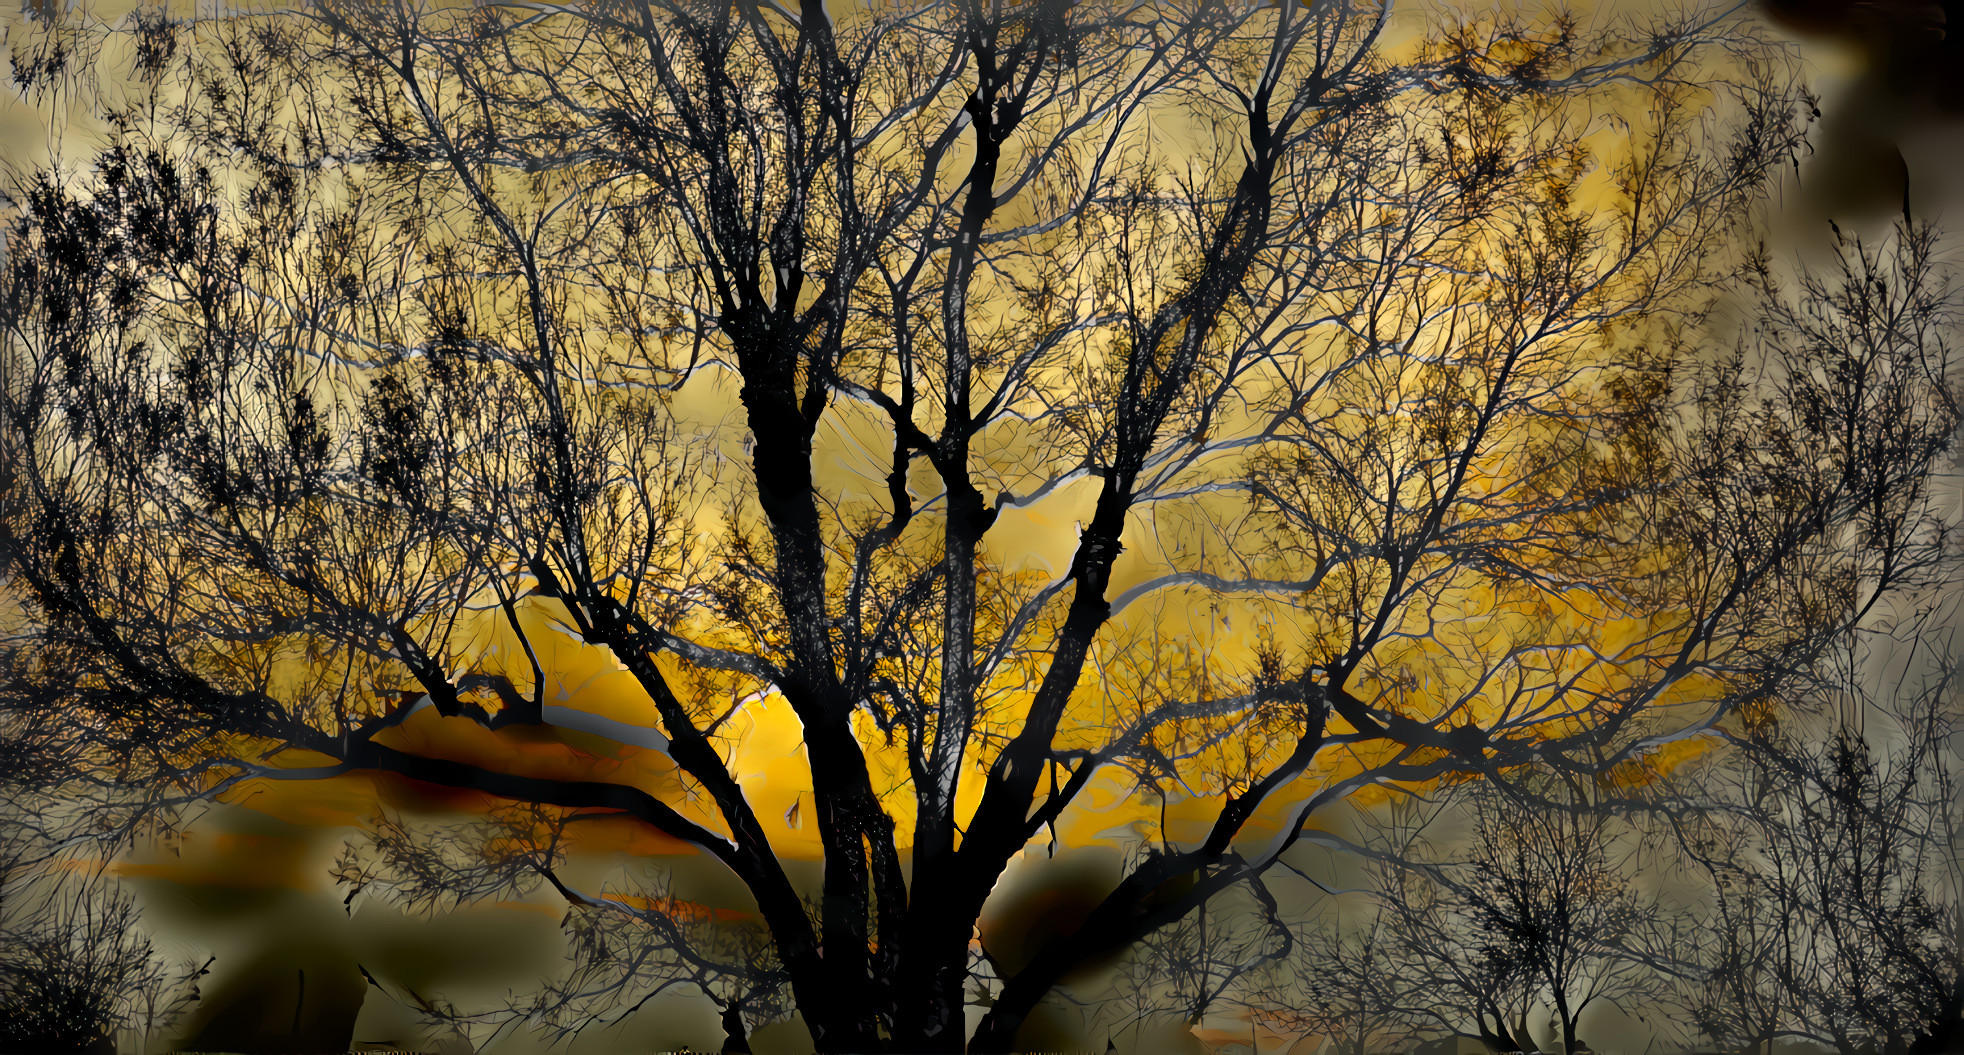 Autumn Tree at Twilight